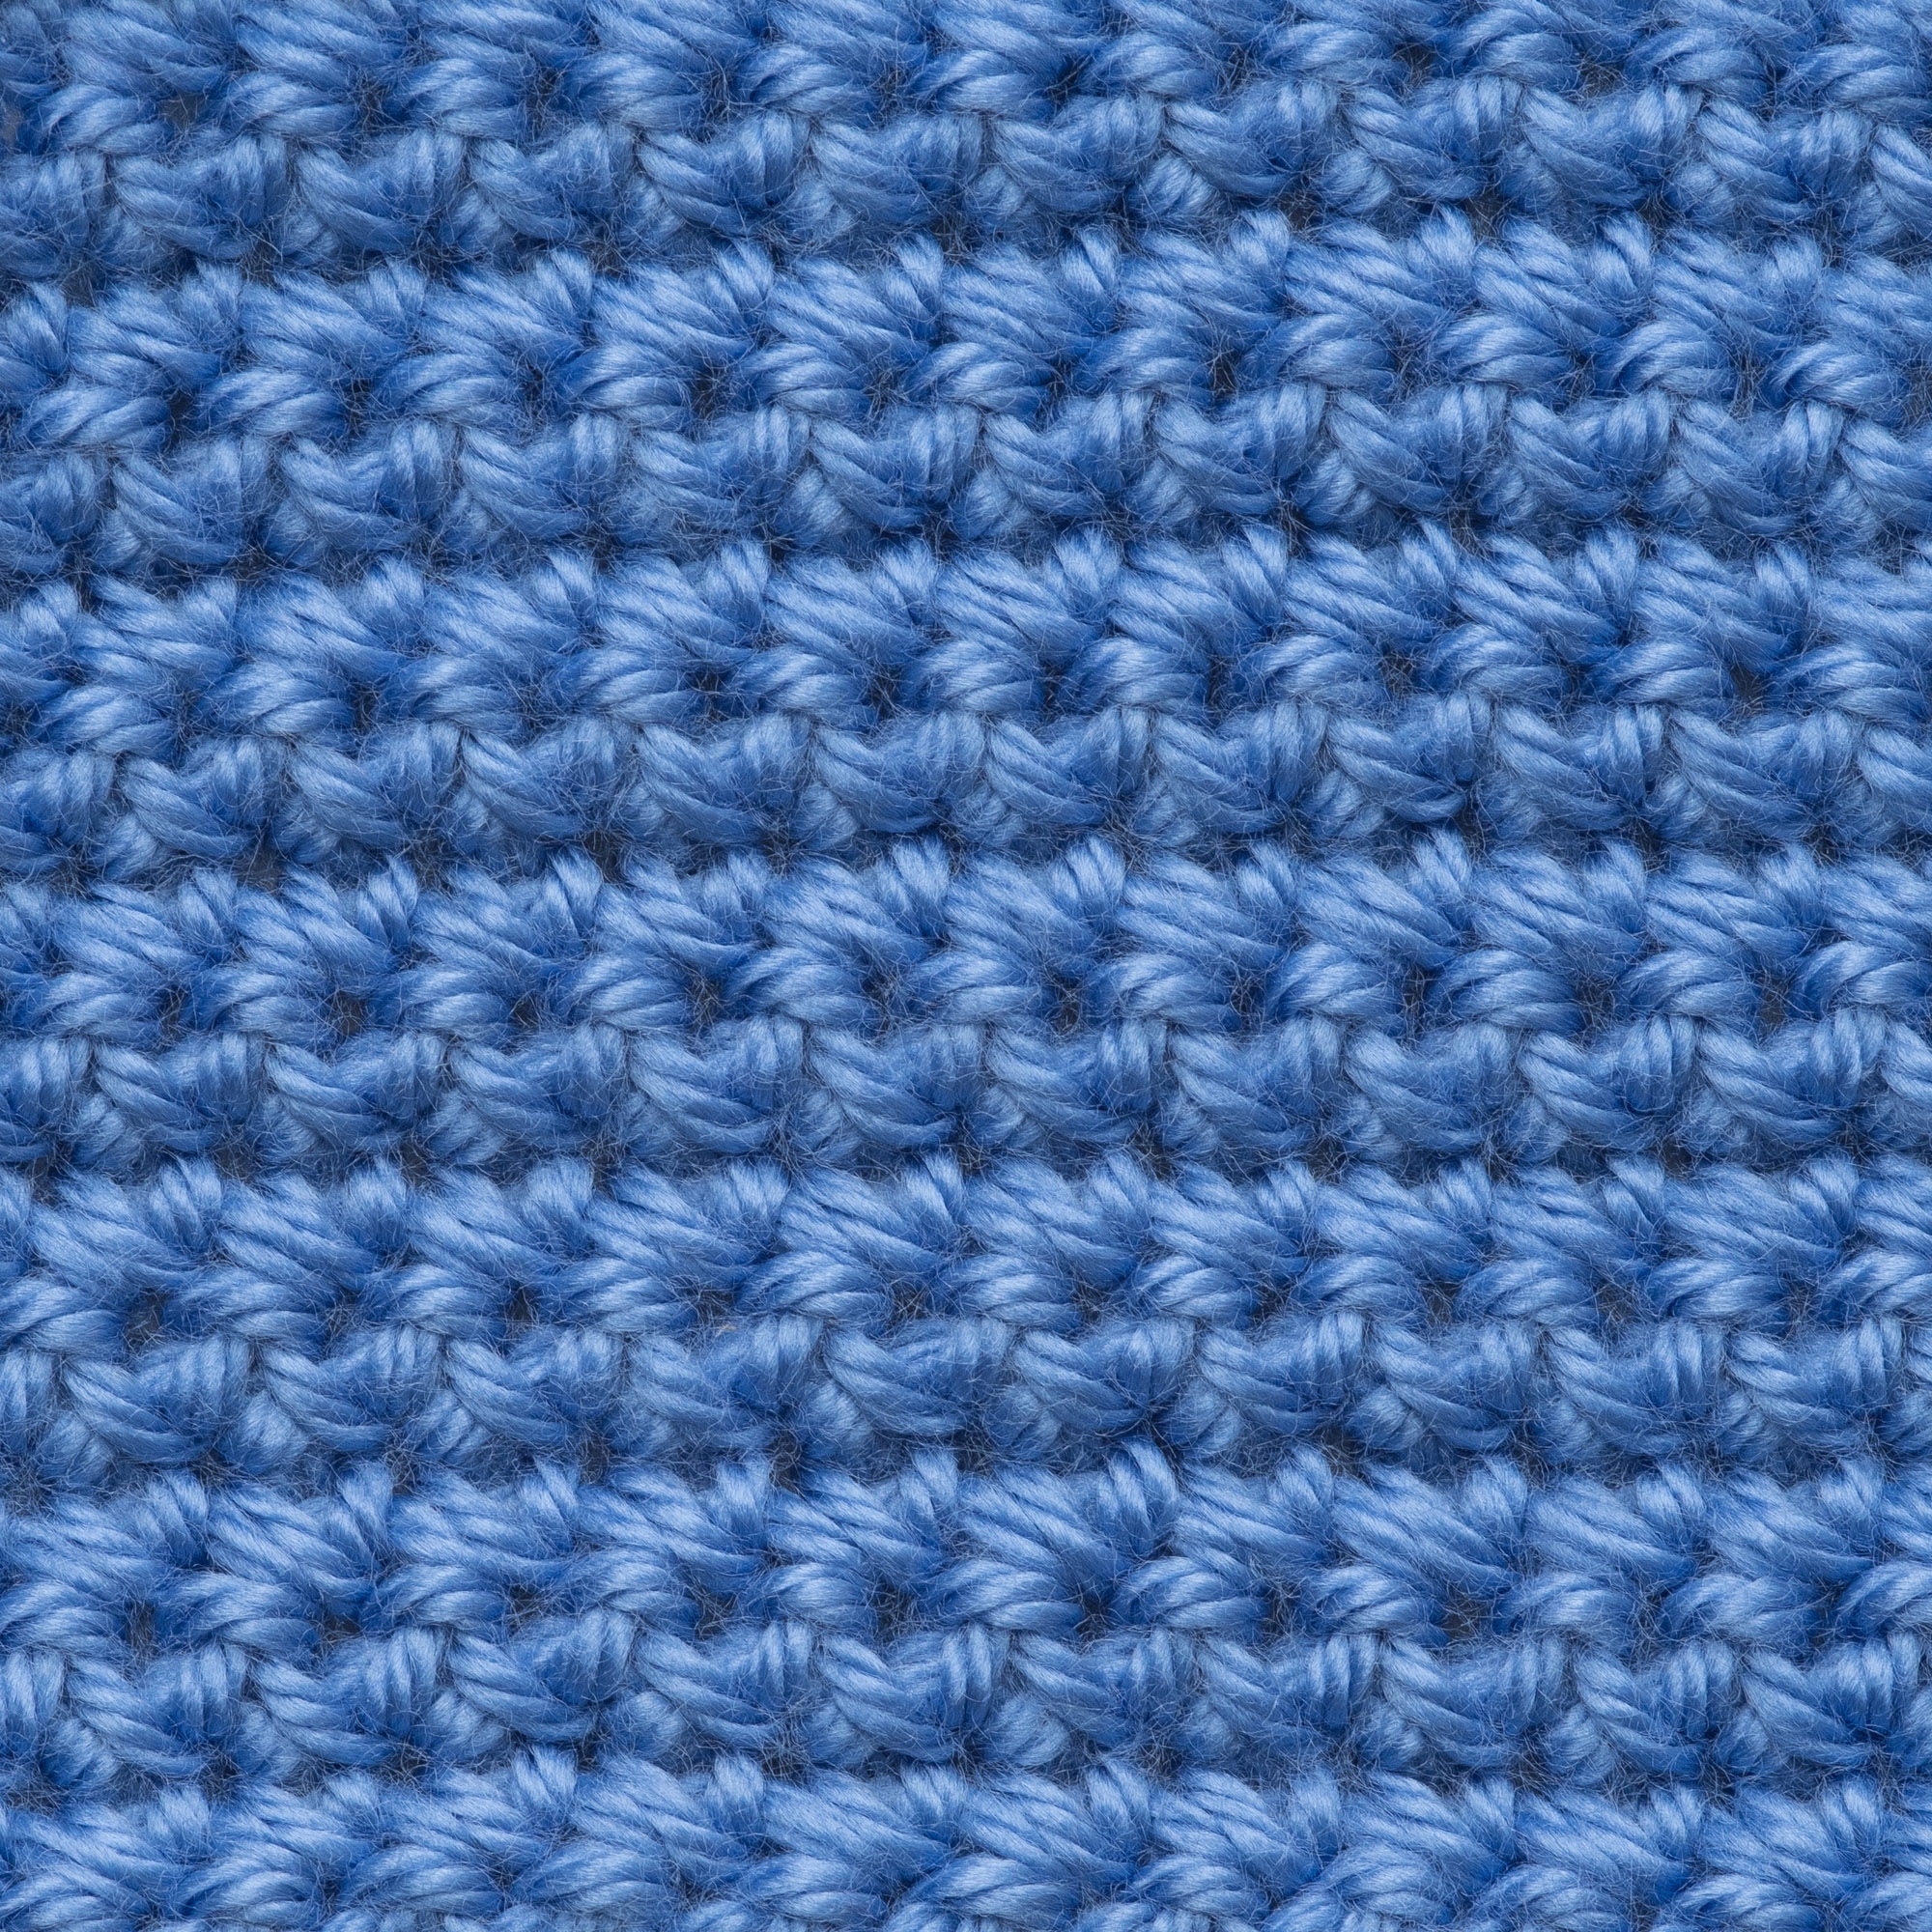 Blueberry Kiwi, Caron Cakes Yarn, Green Blue, Knit Crochet, Medium 4  Acrylic Wool Yarn, Scarf Accessory Yarn 